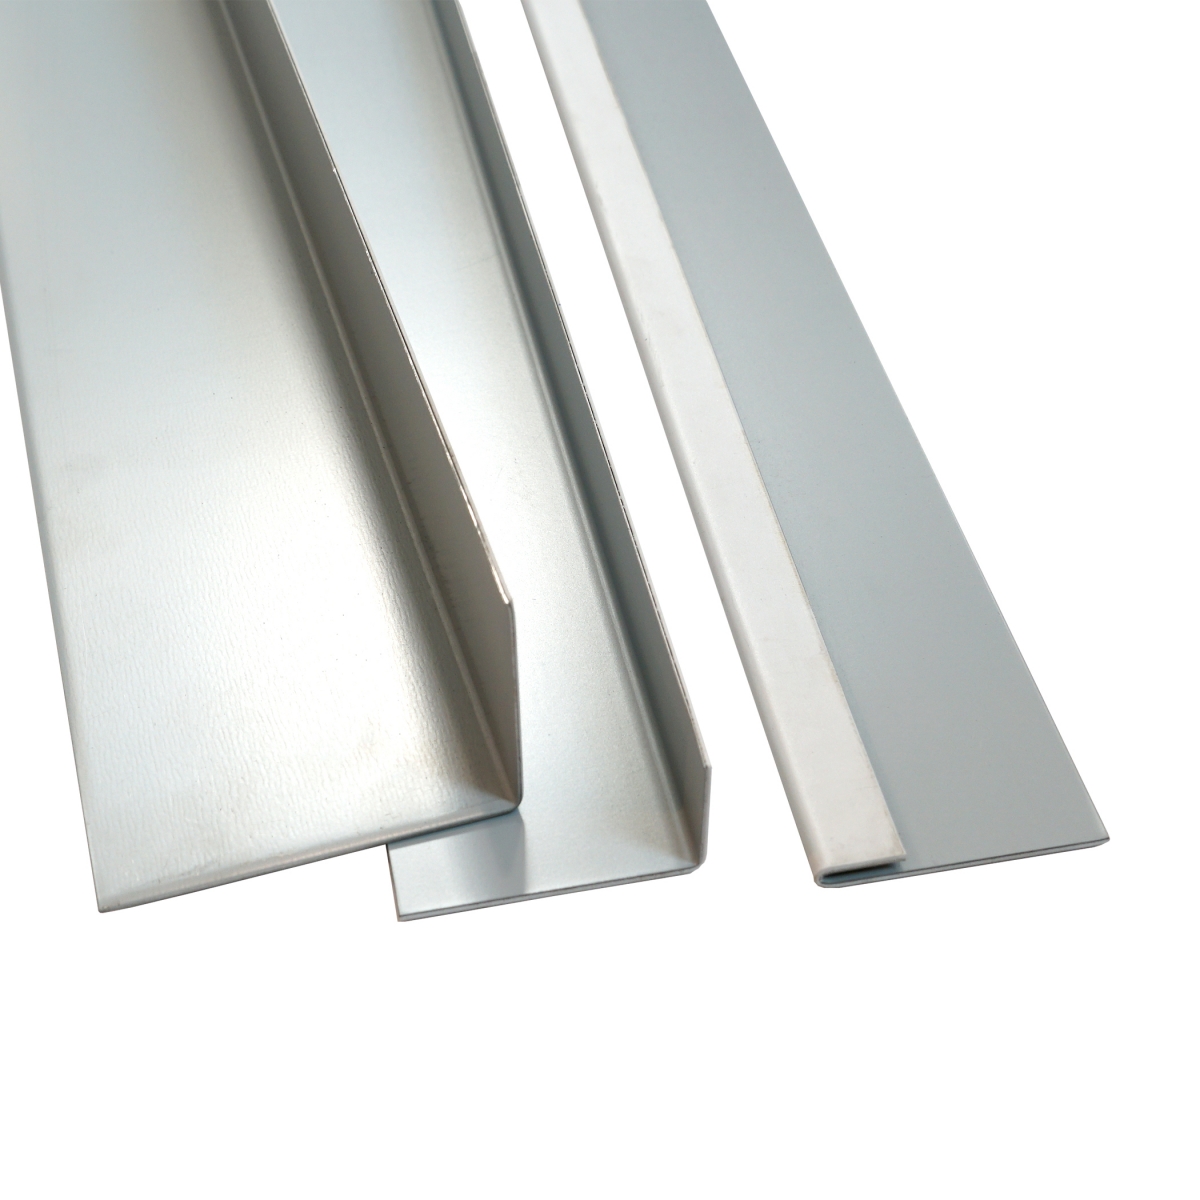 Steel sheet one-side coated, 50x2000 mm, grey Steel sheet one-side coated, 50x2000 mm, grey